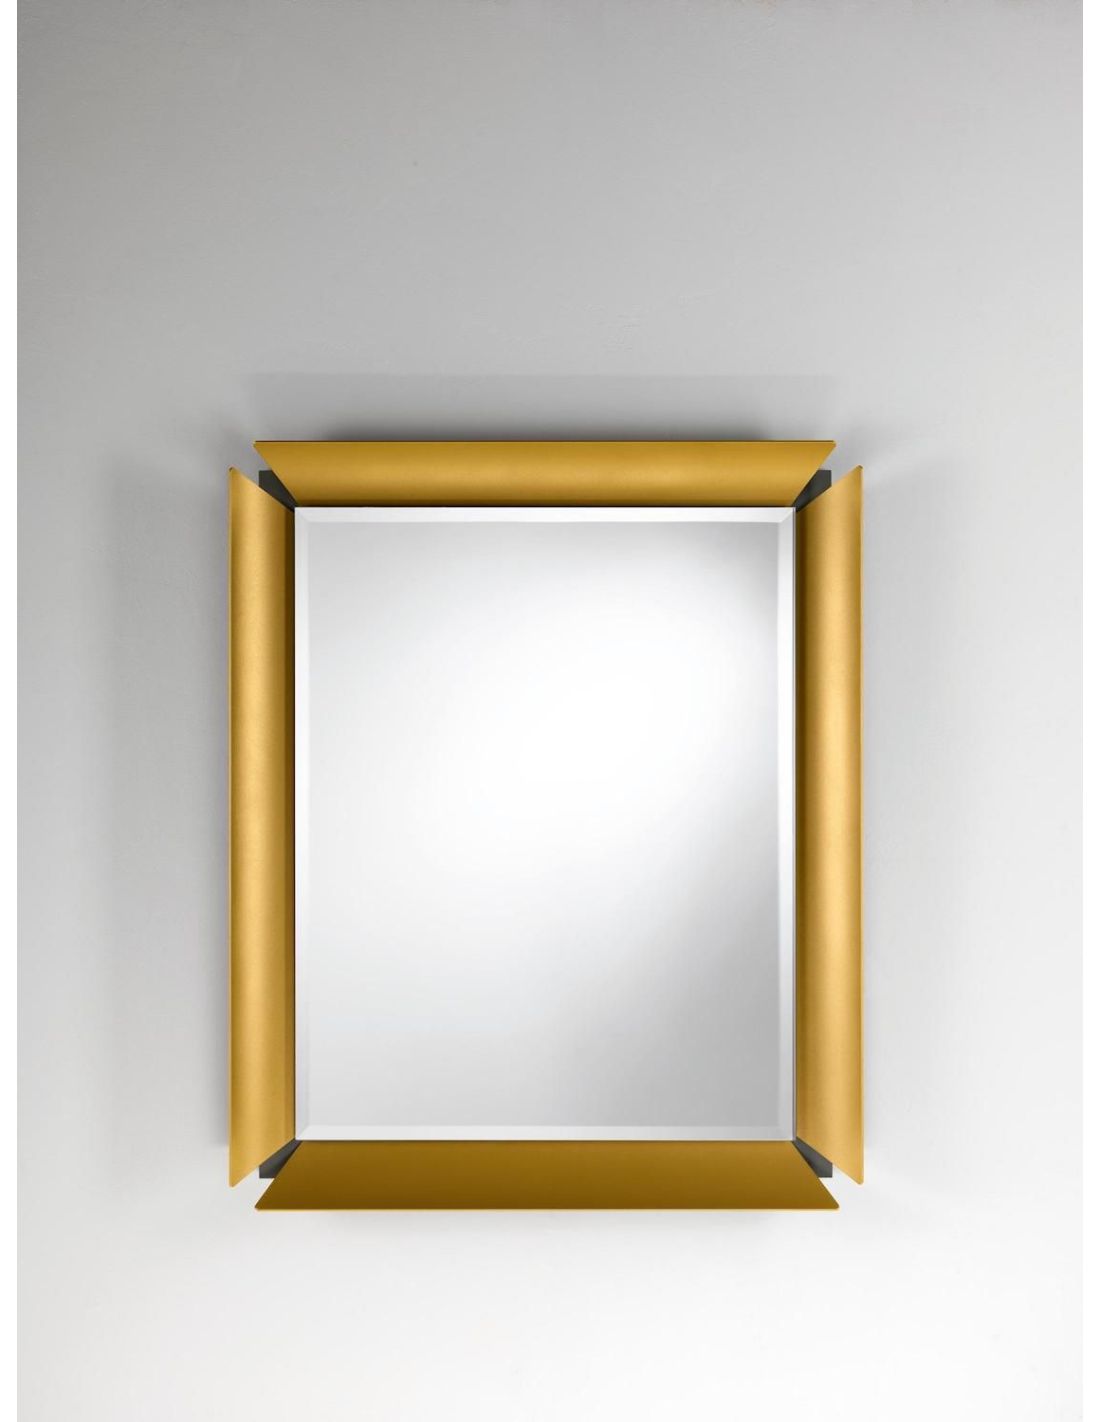 Specchio da parete design Clepsydra X by Atlasproject